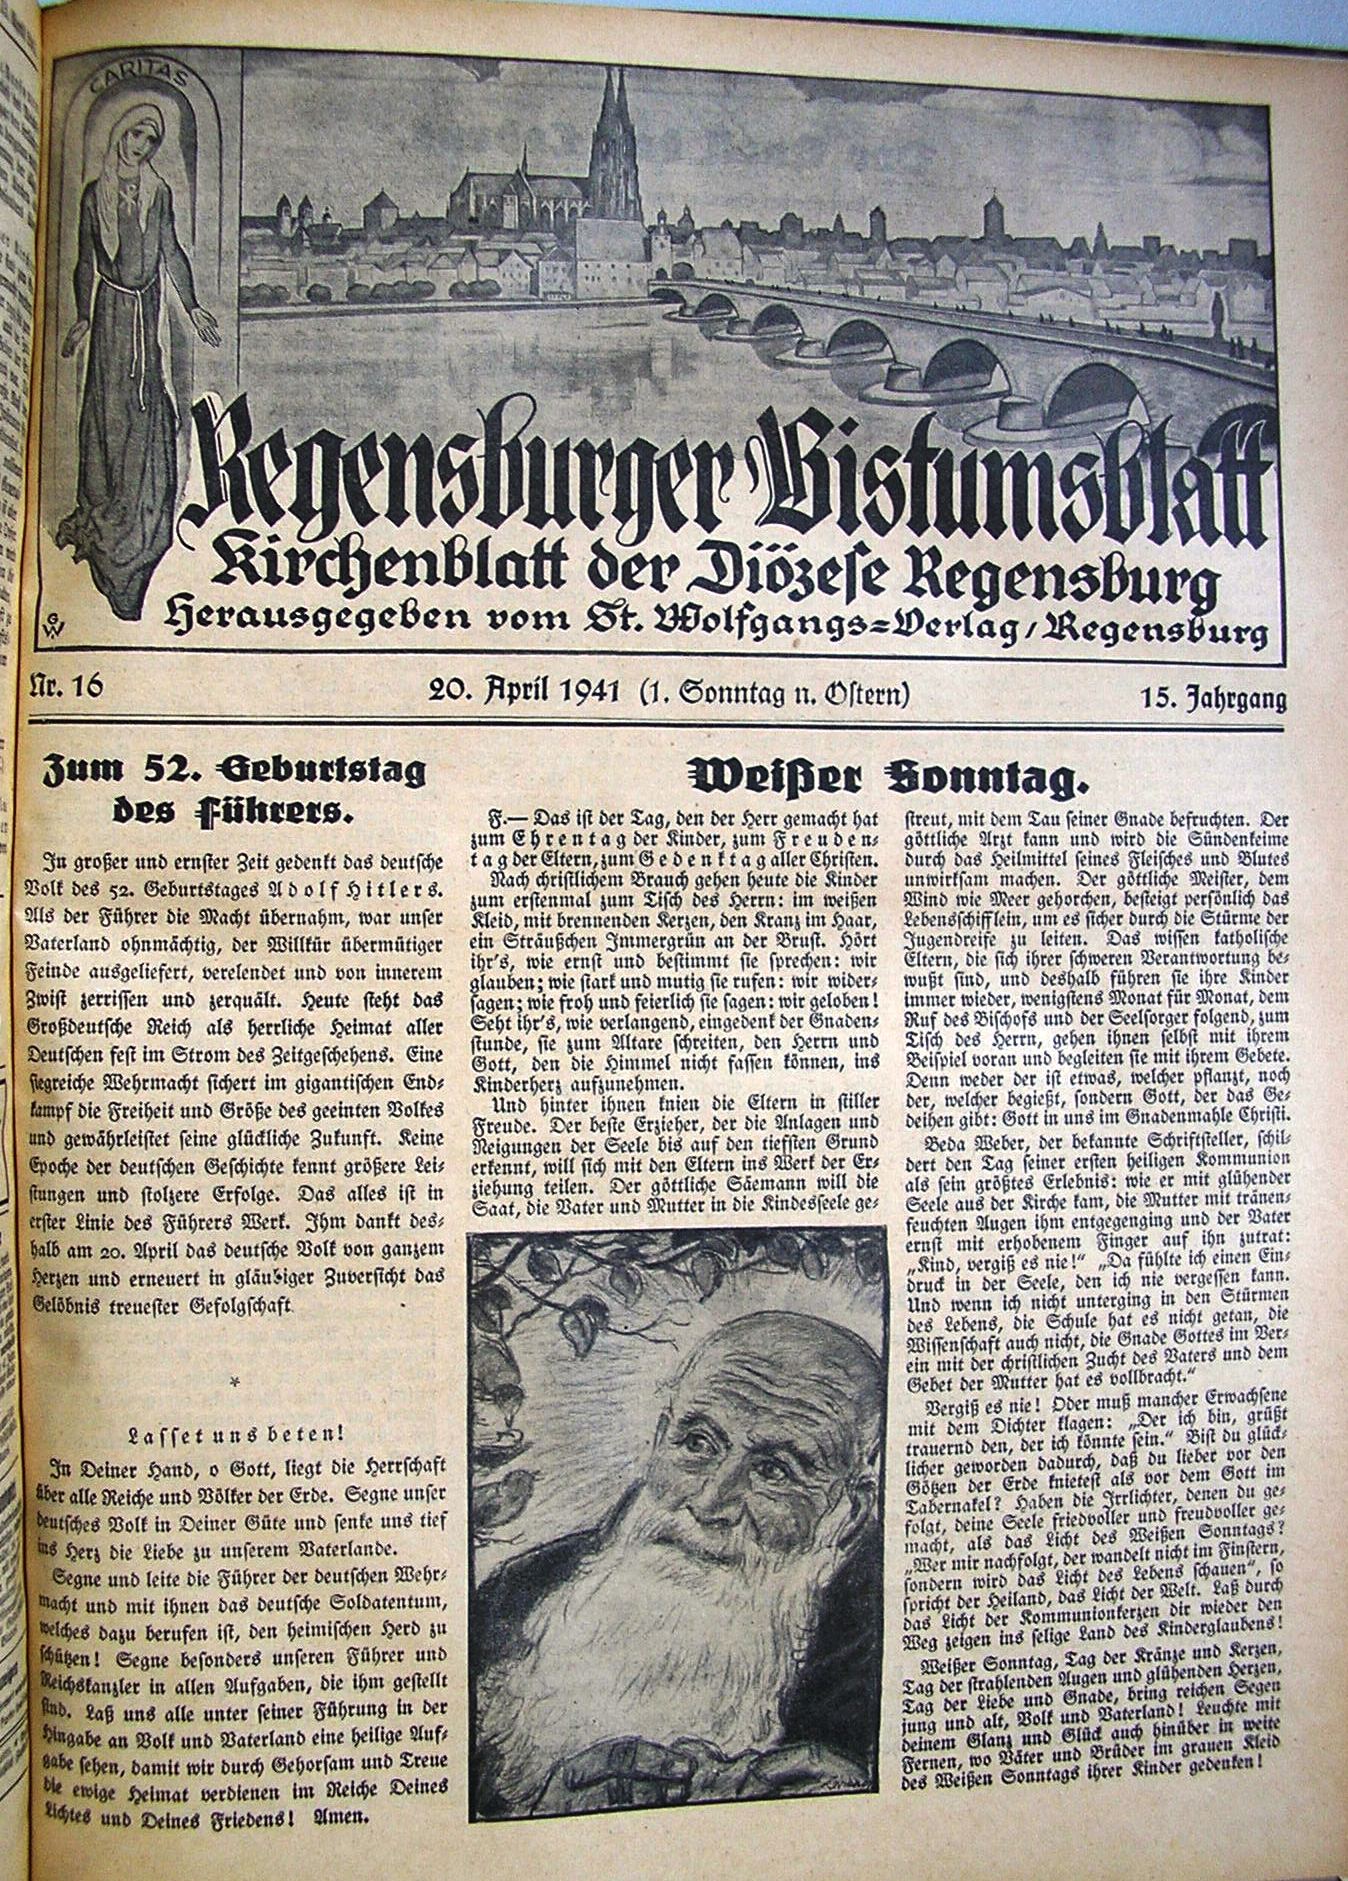 Das Bistumsblatt jubiliert "zum 52. Geburtstag des Führers".